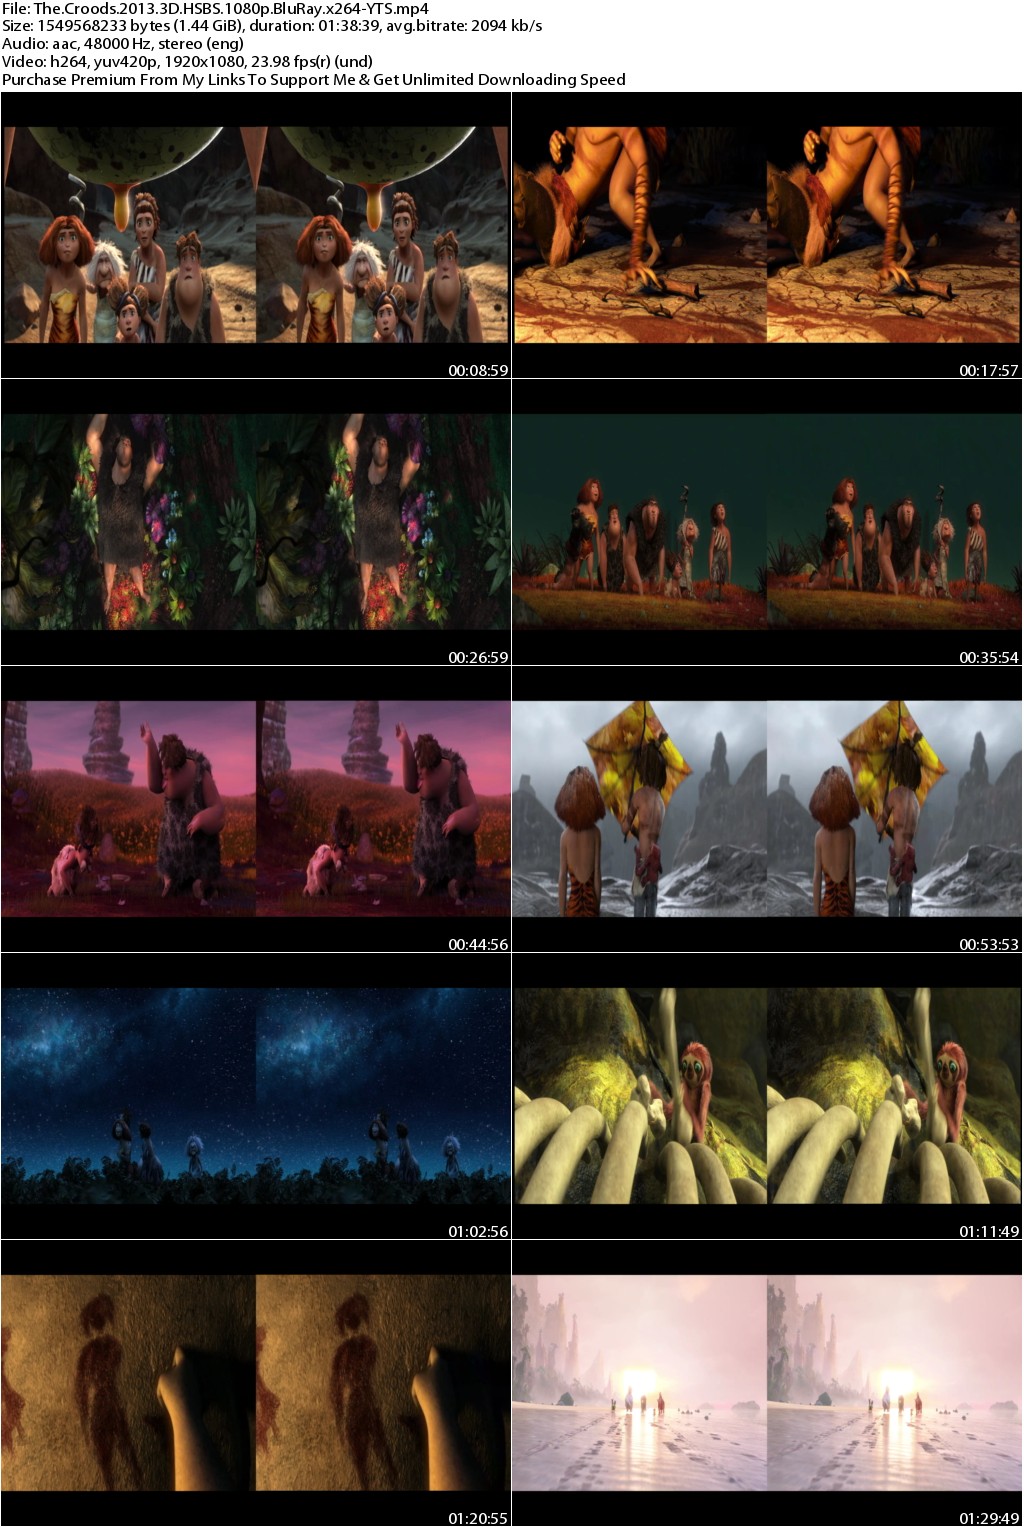 The Croods (2013) 3D HSBS 1080p BluRay x264-YTS